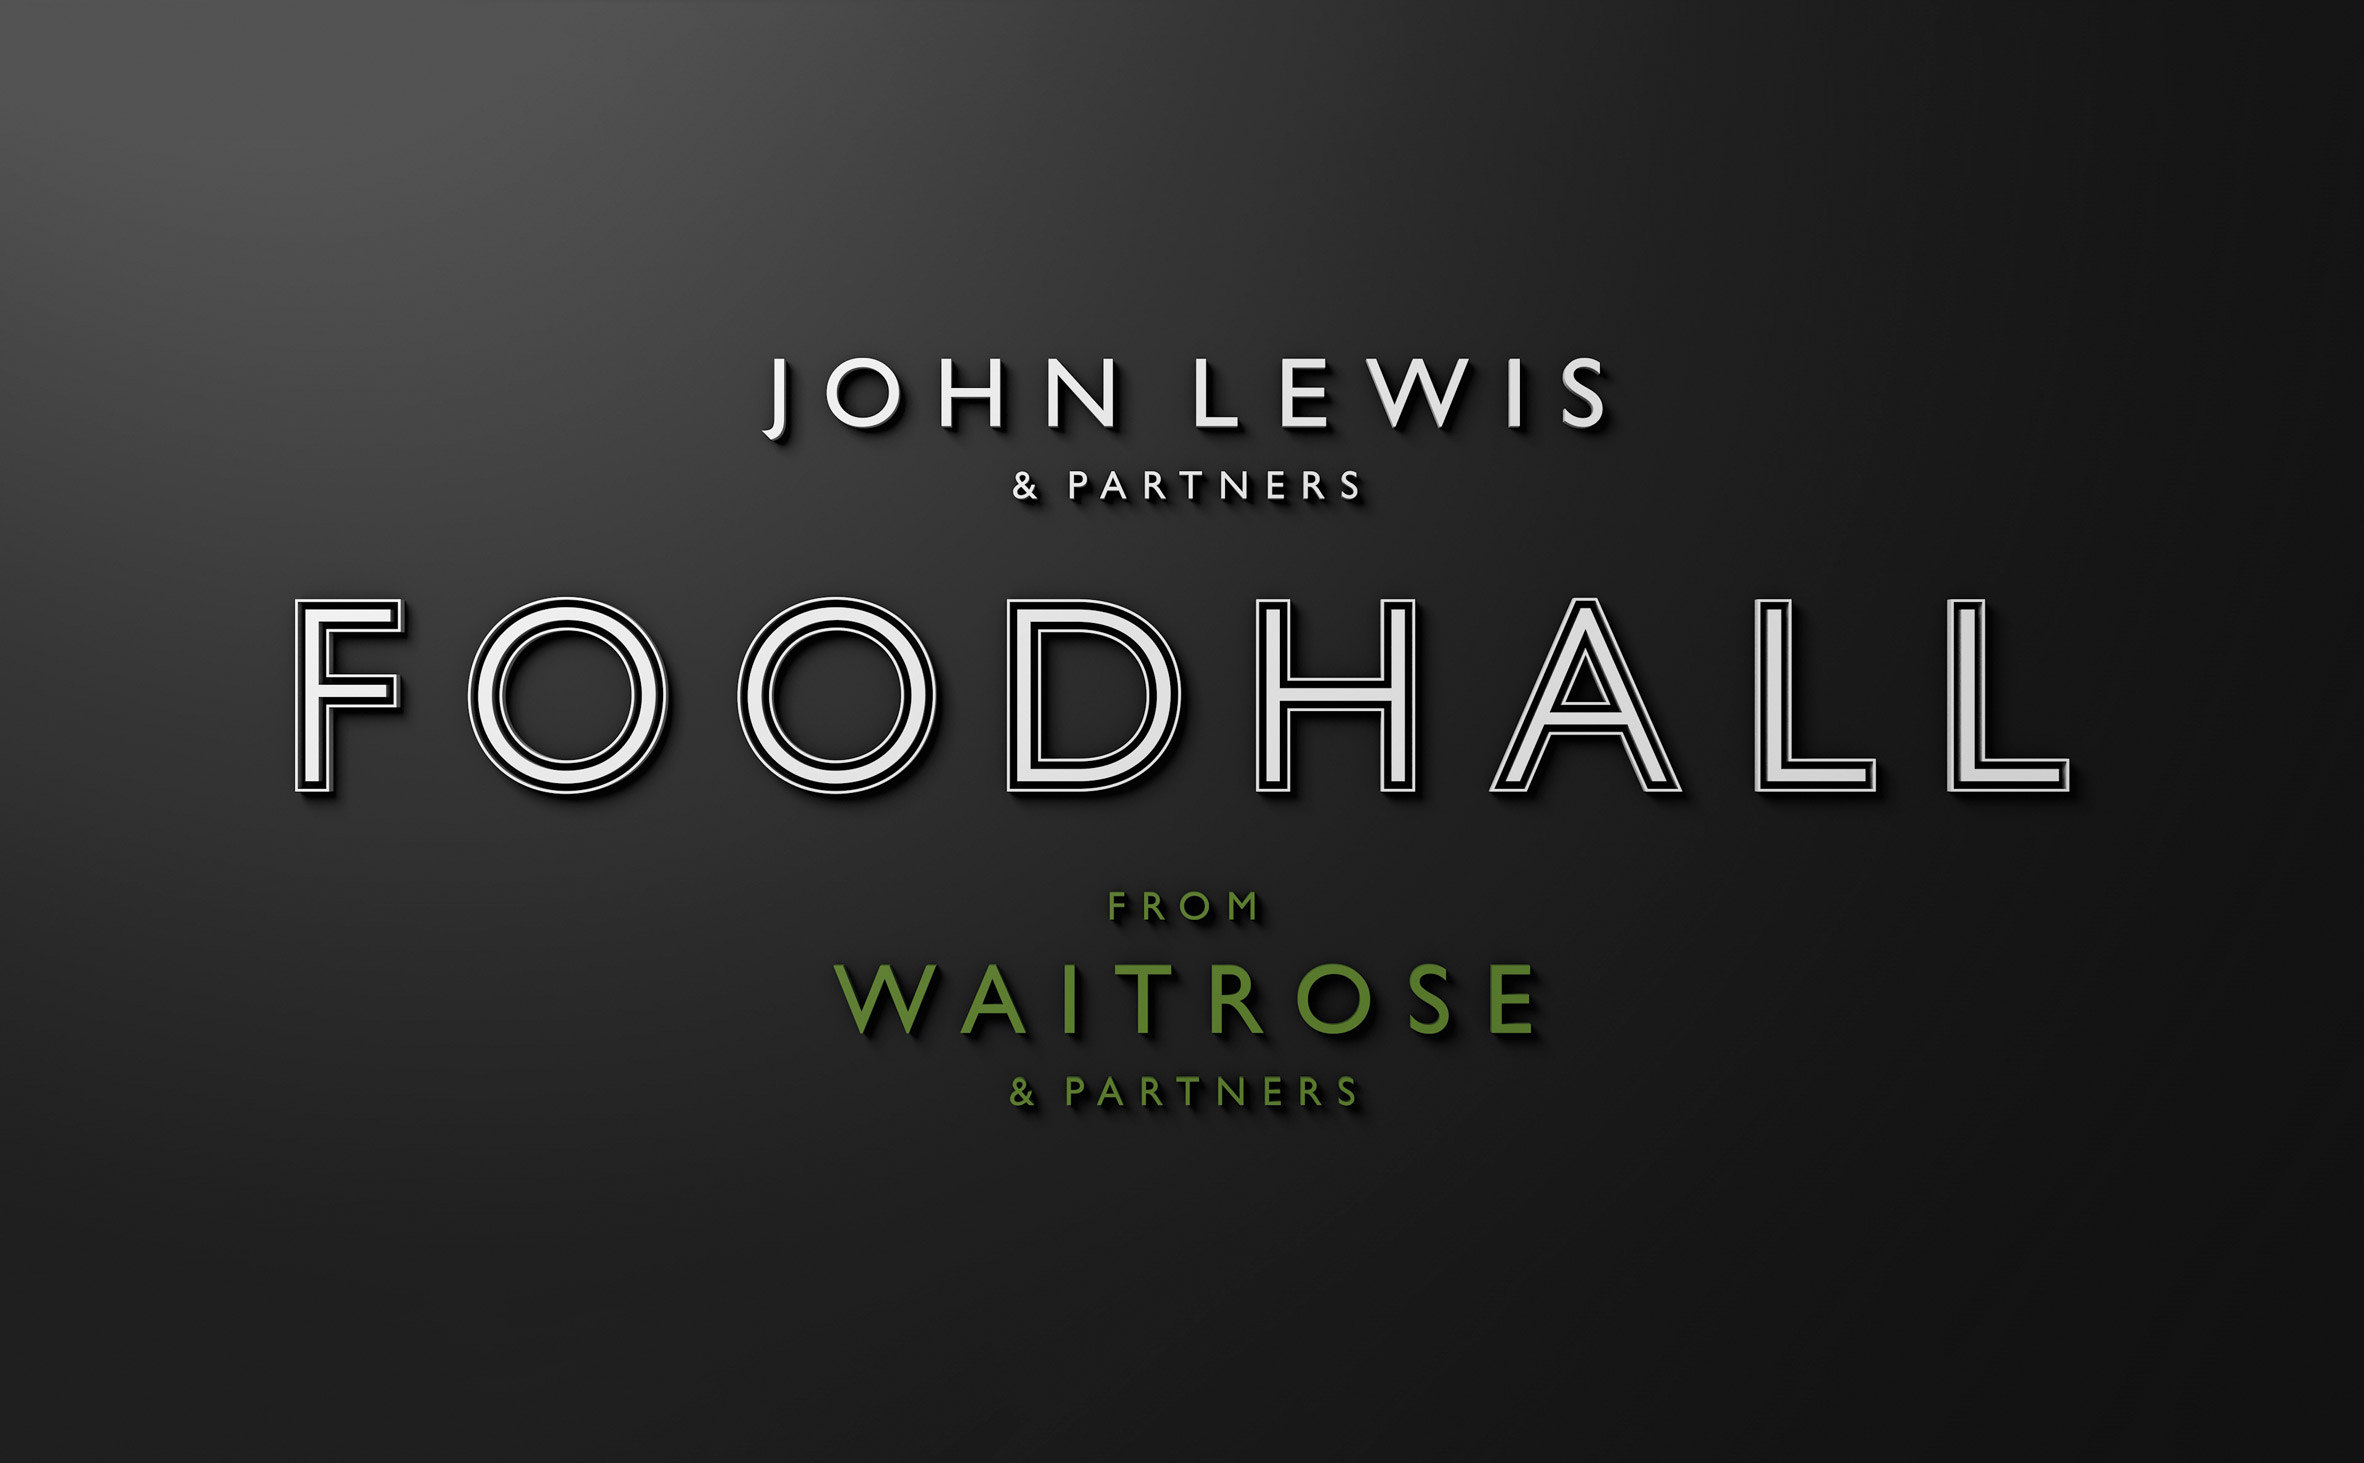 Pentagram rebrands John Lewis and Waitrose